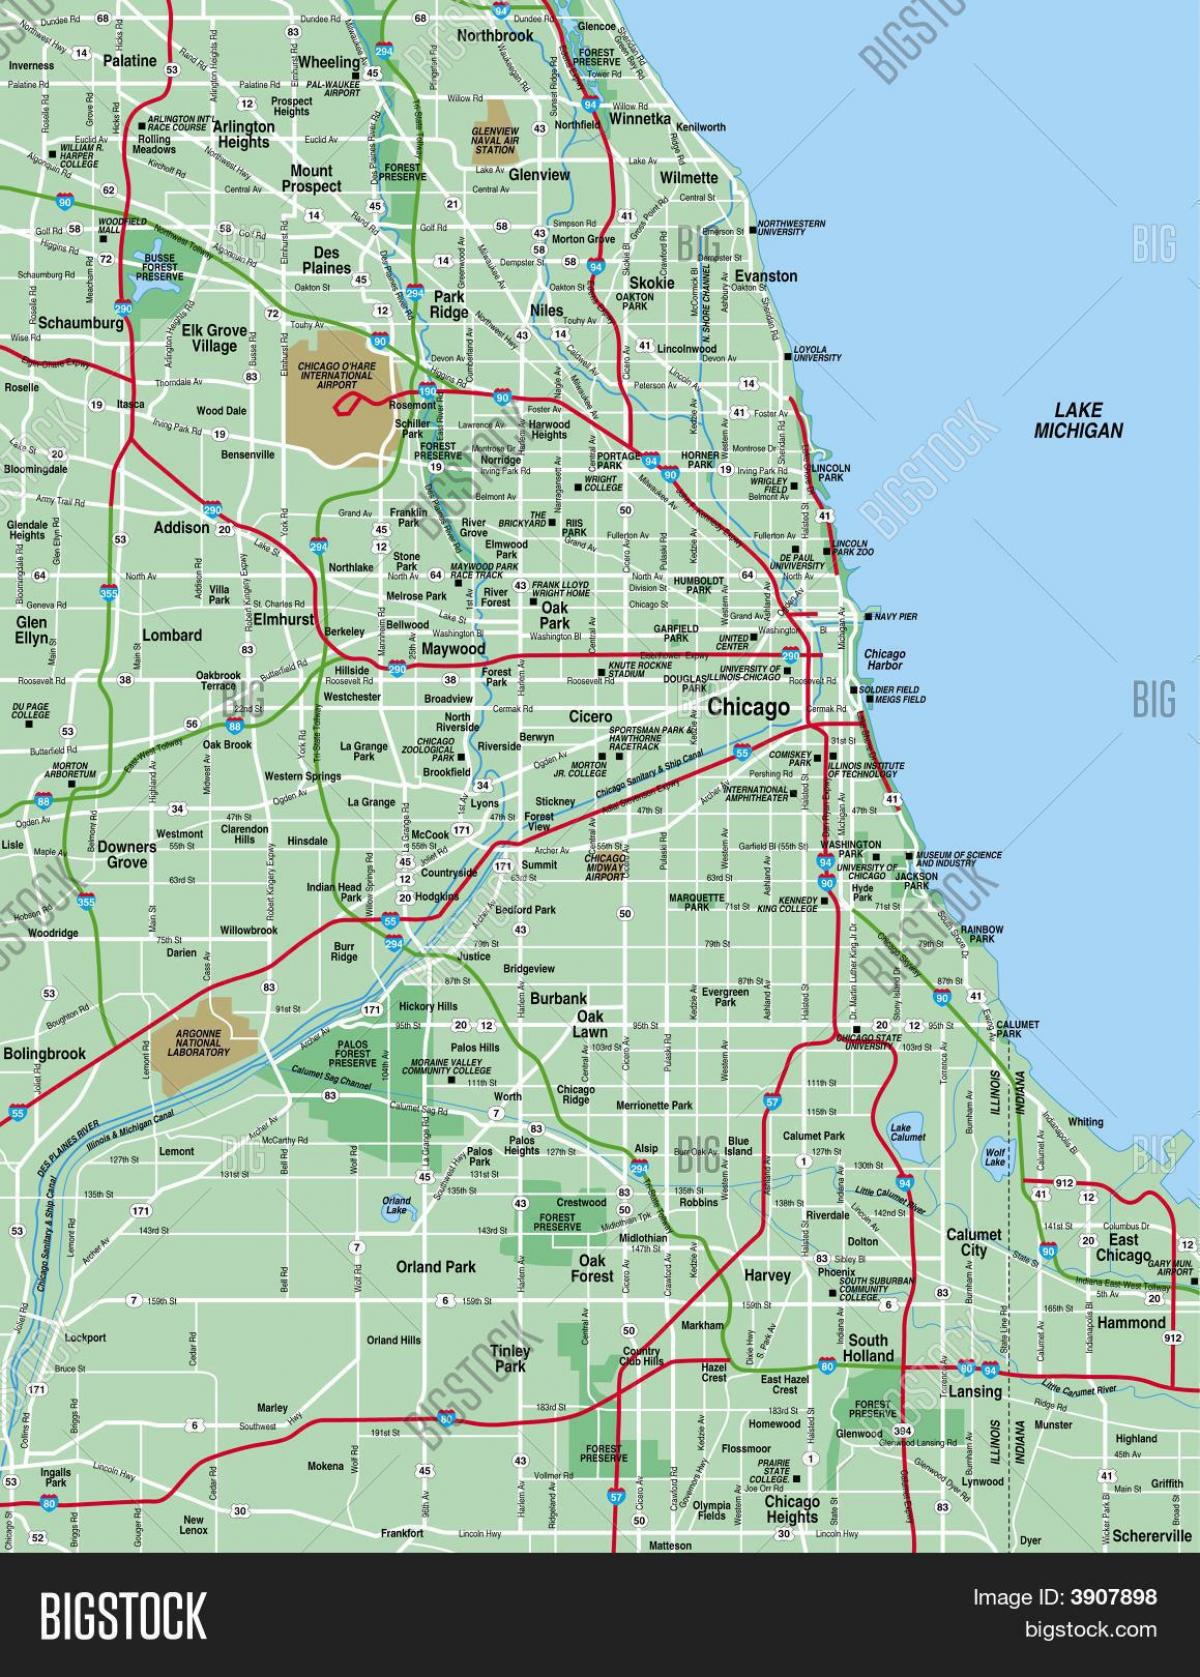 แผนที่ชิคาโกพื้นที่